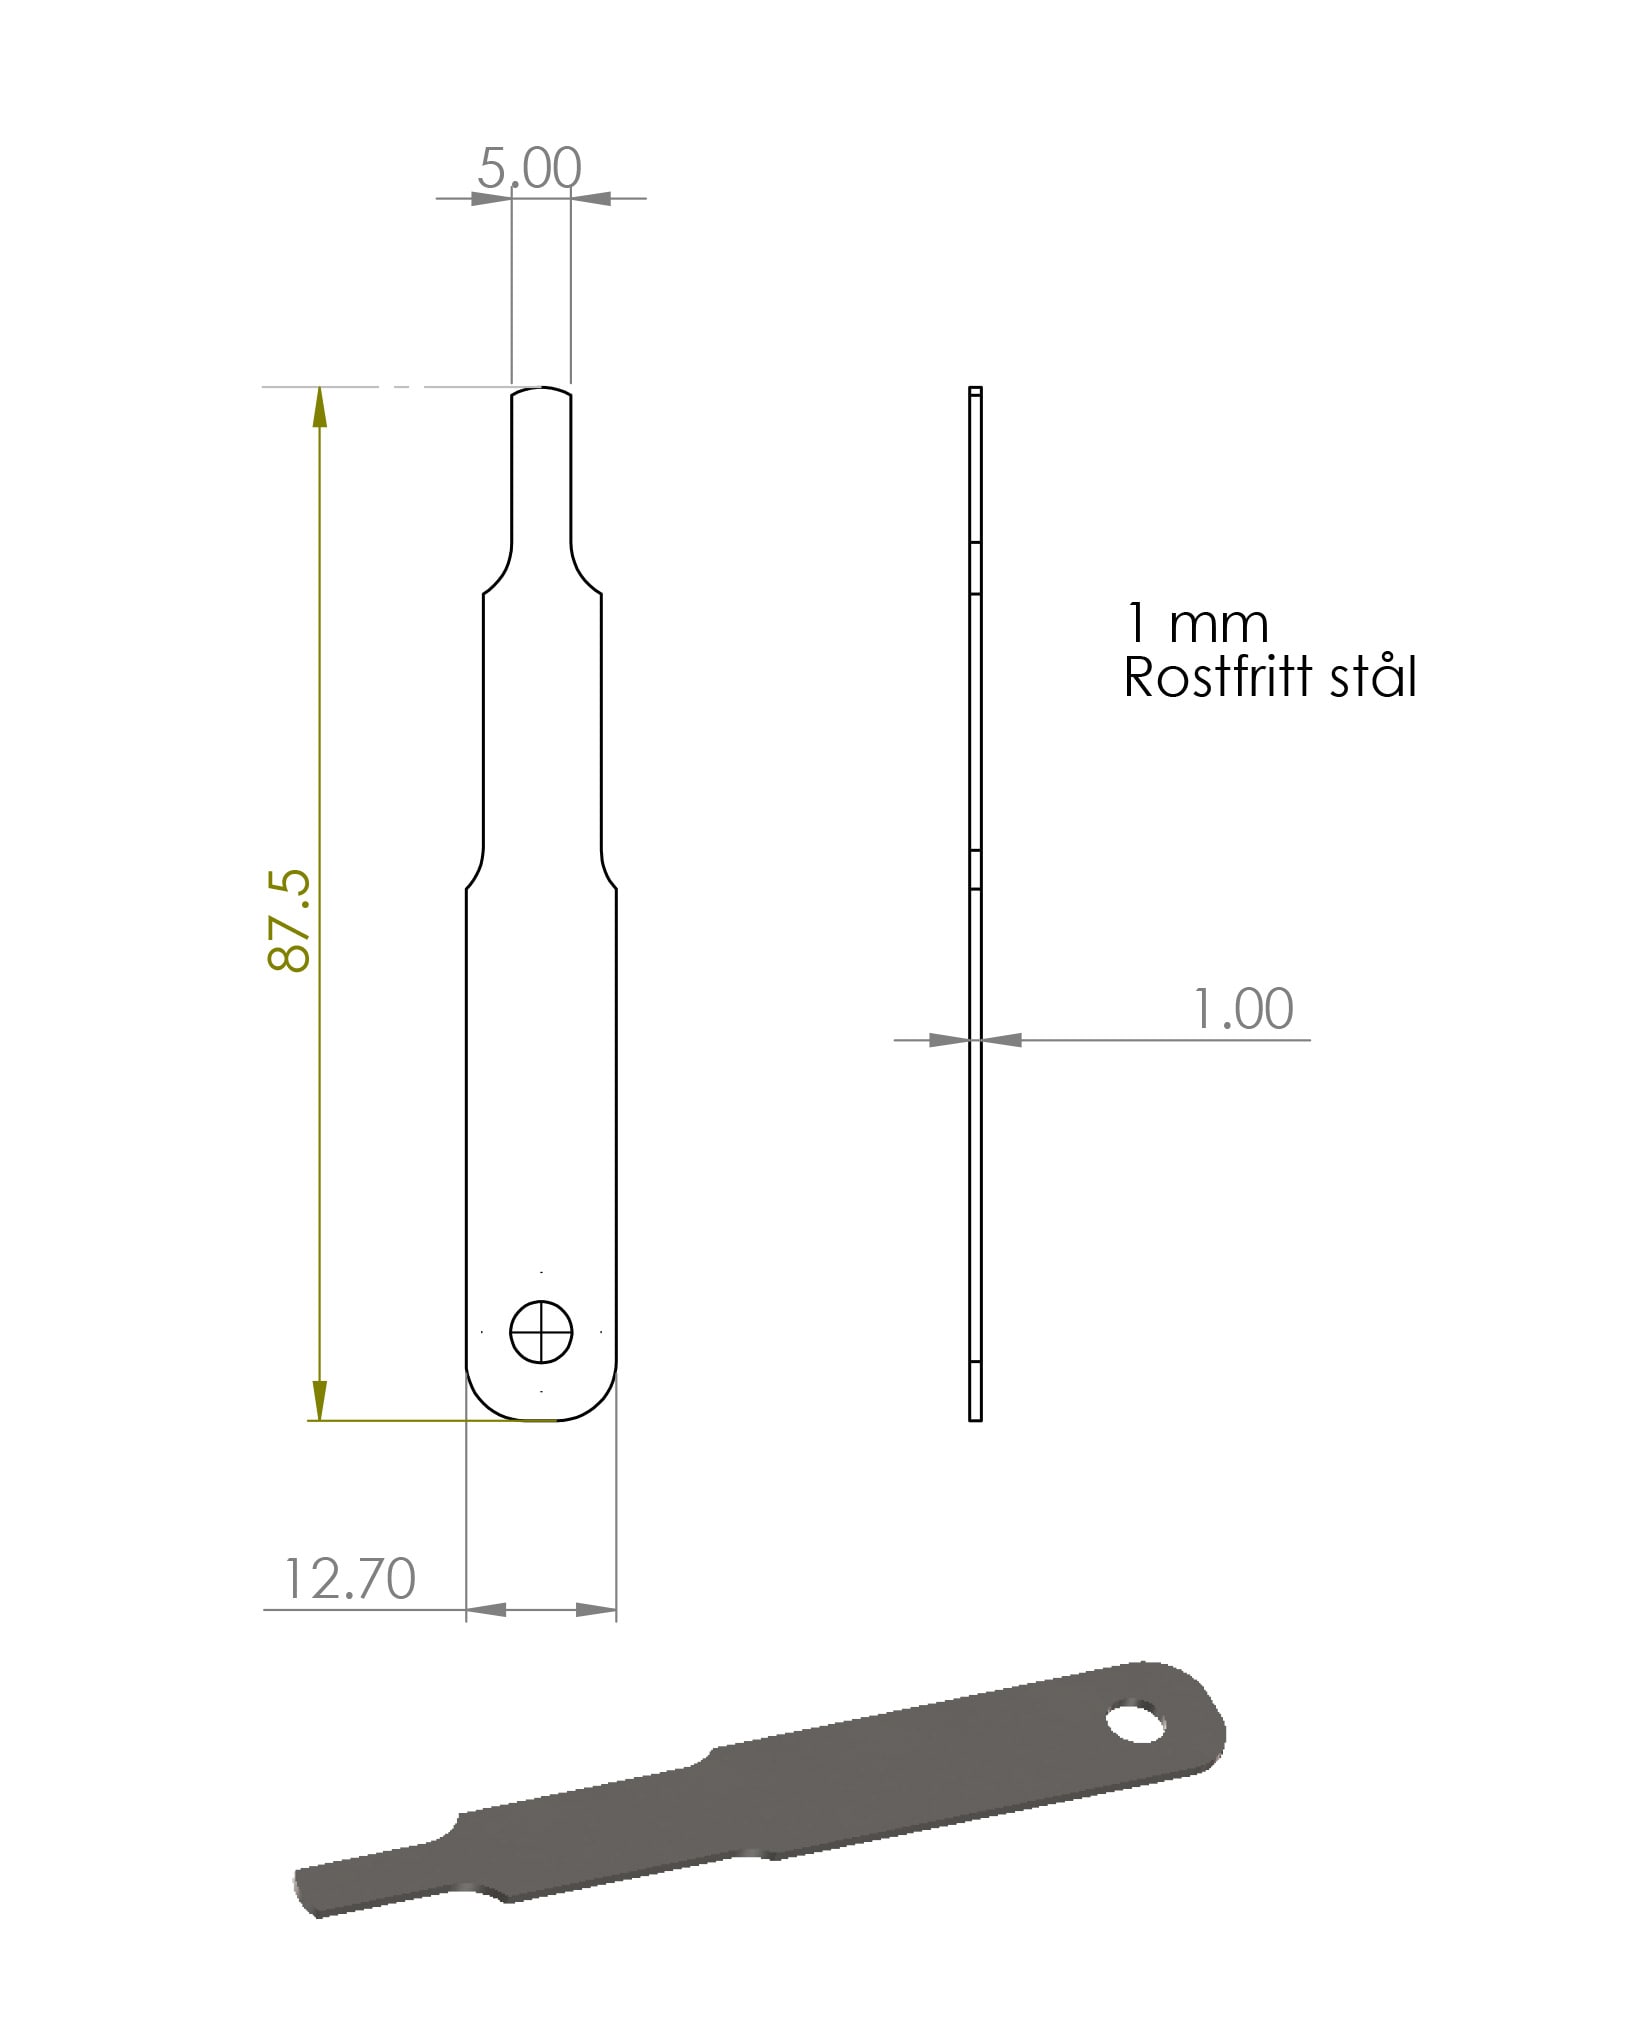 Følermål 1 mm til Raket 95 CIK/FIA Standard